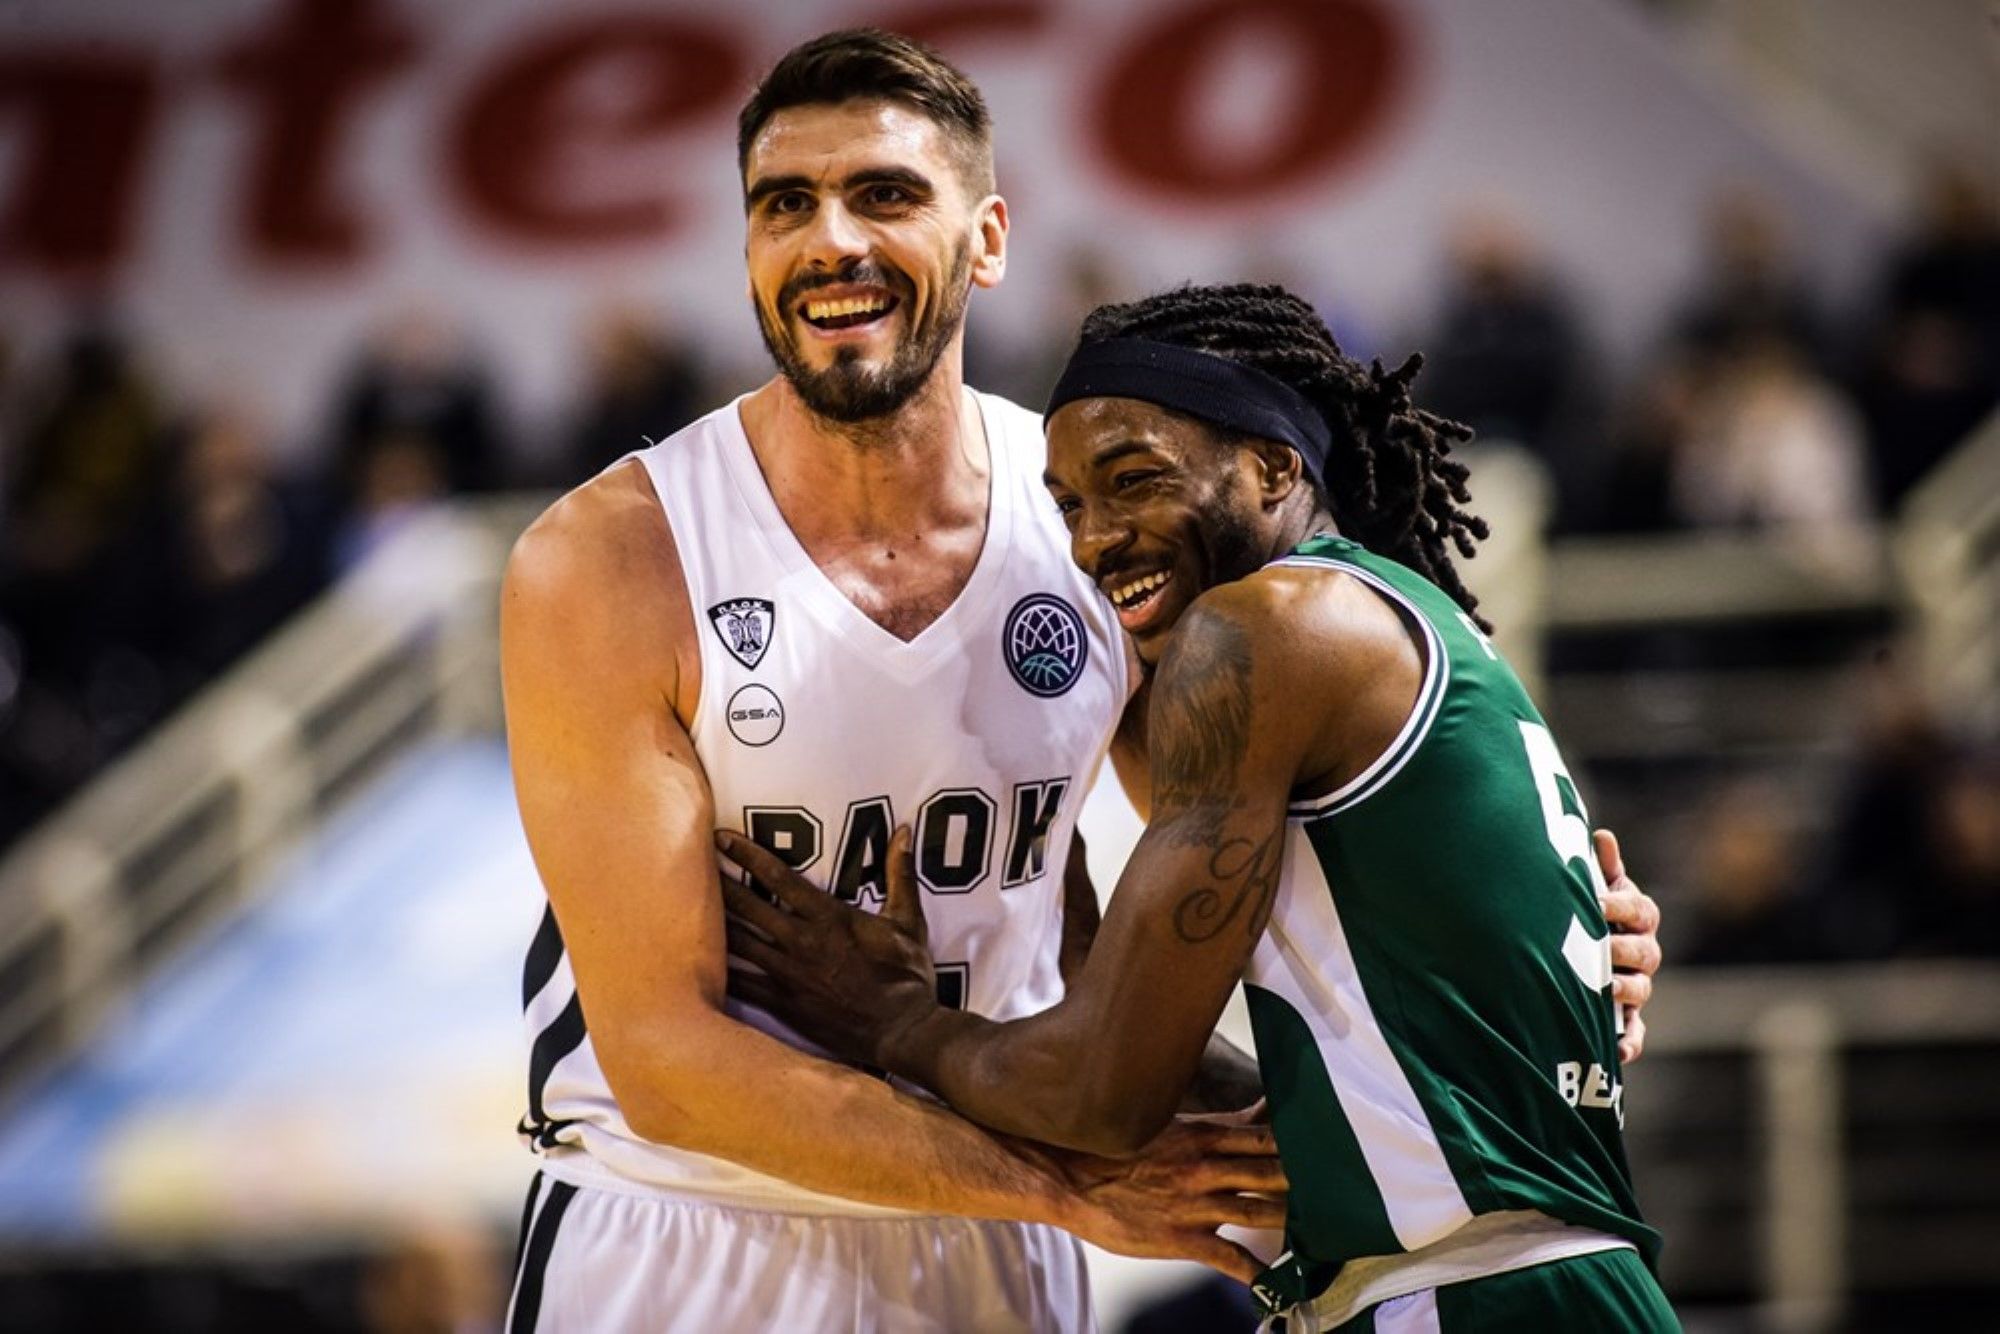 Basketball Champions League | Paok de Salónica - Unicaja Málaga, en imágenes